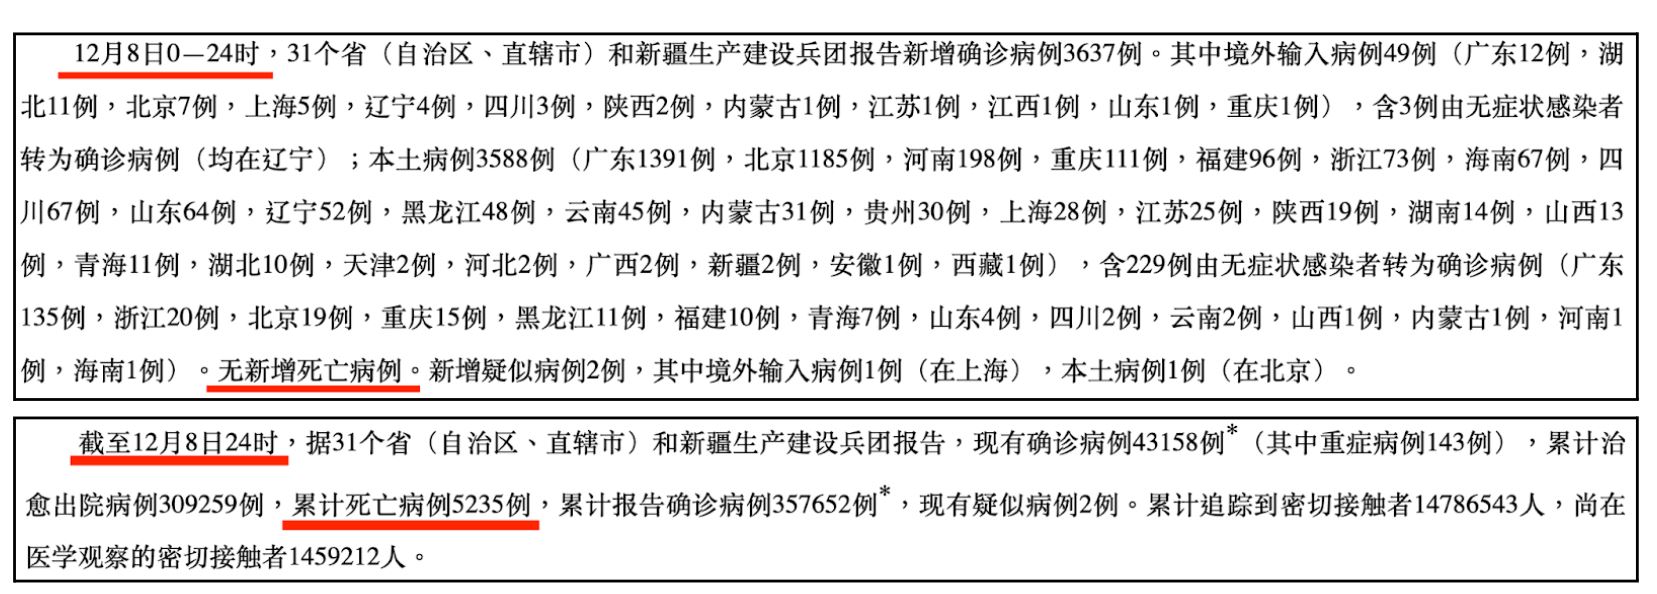 Dữ liệu COVID-19 do CDC Trung Quốc công bố cho biết tổng số người tử vong là 5,235 tính đến ngày 08/12/2022 và không có trường hợp tử vong mới nào vào ngày hôm đó. (Ảnh: chụp từ Trang web chính thức của CDC Trung Quốc)